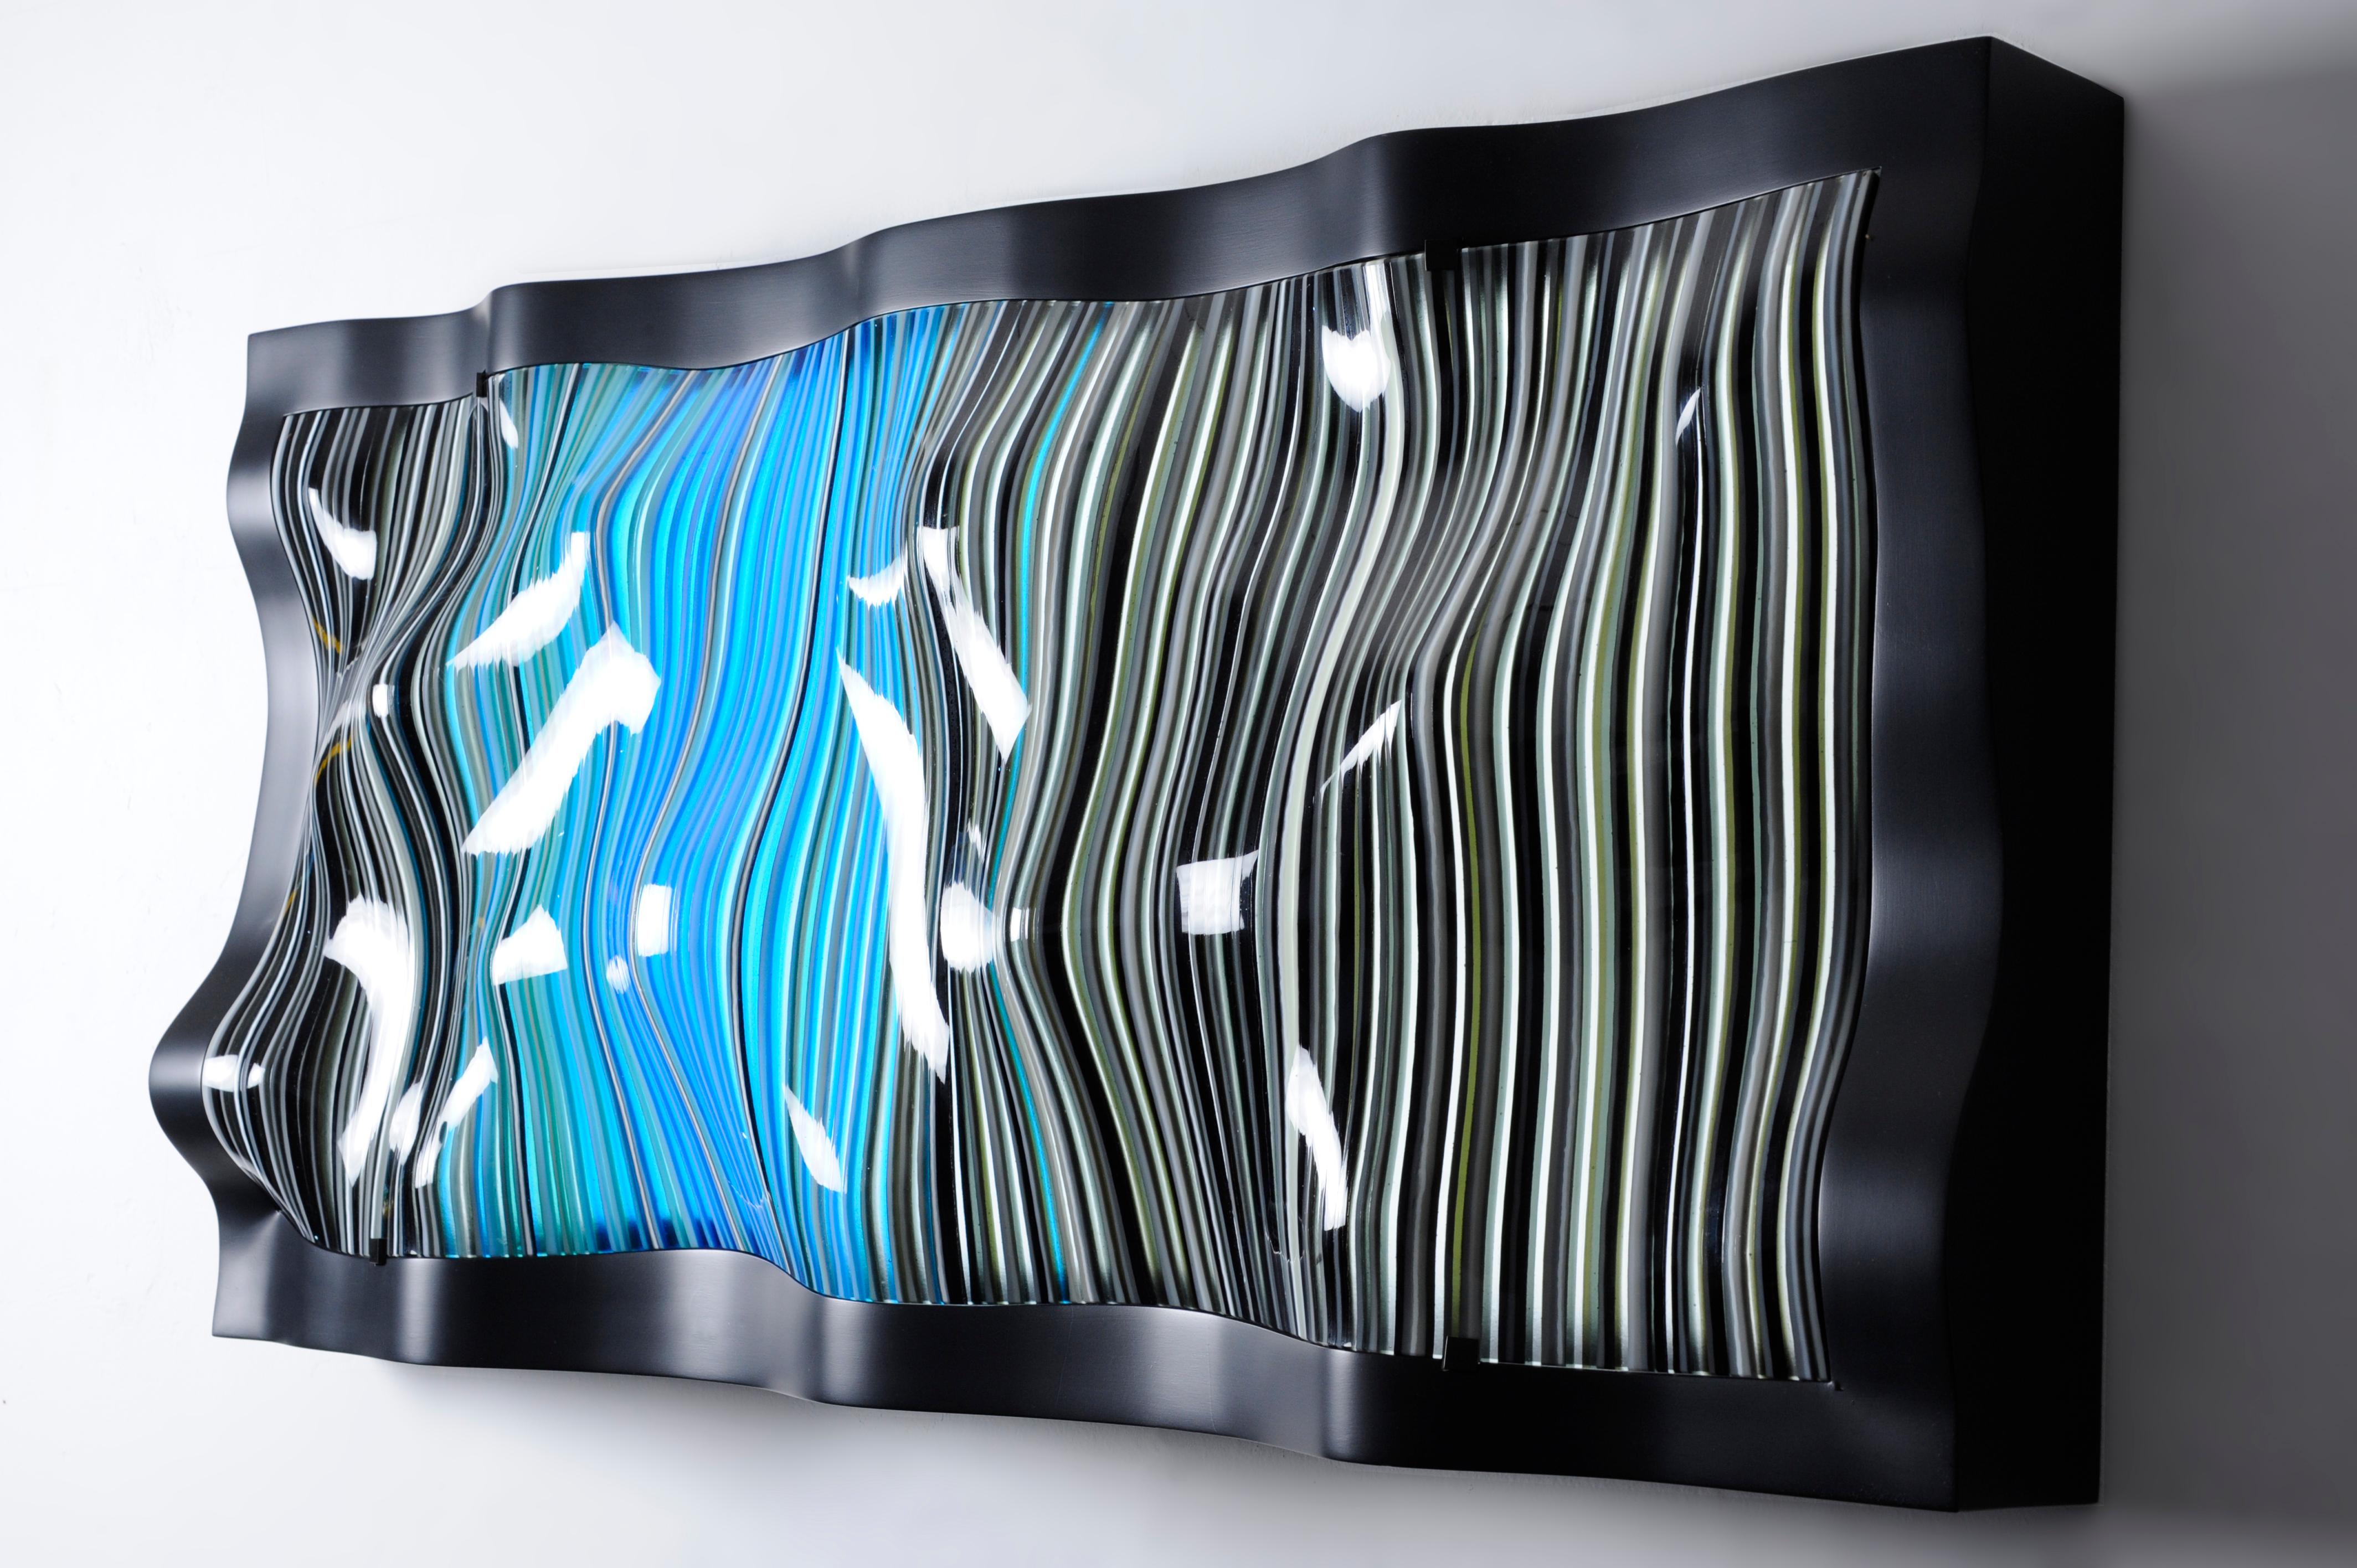 Ein Objekt aus geschmolzenem und thermogeformtem Glas, entworfen von Orfeo Quagliata. 
100% handgefertigt mit exklusiven Techniken und hochwertigem Material. Aus unserer Kollektion 